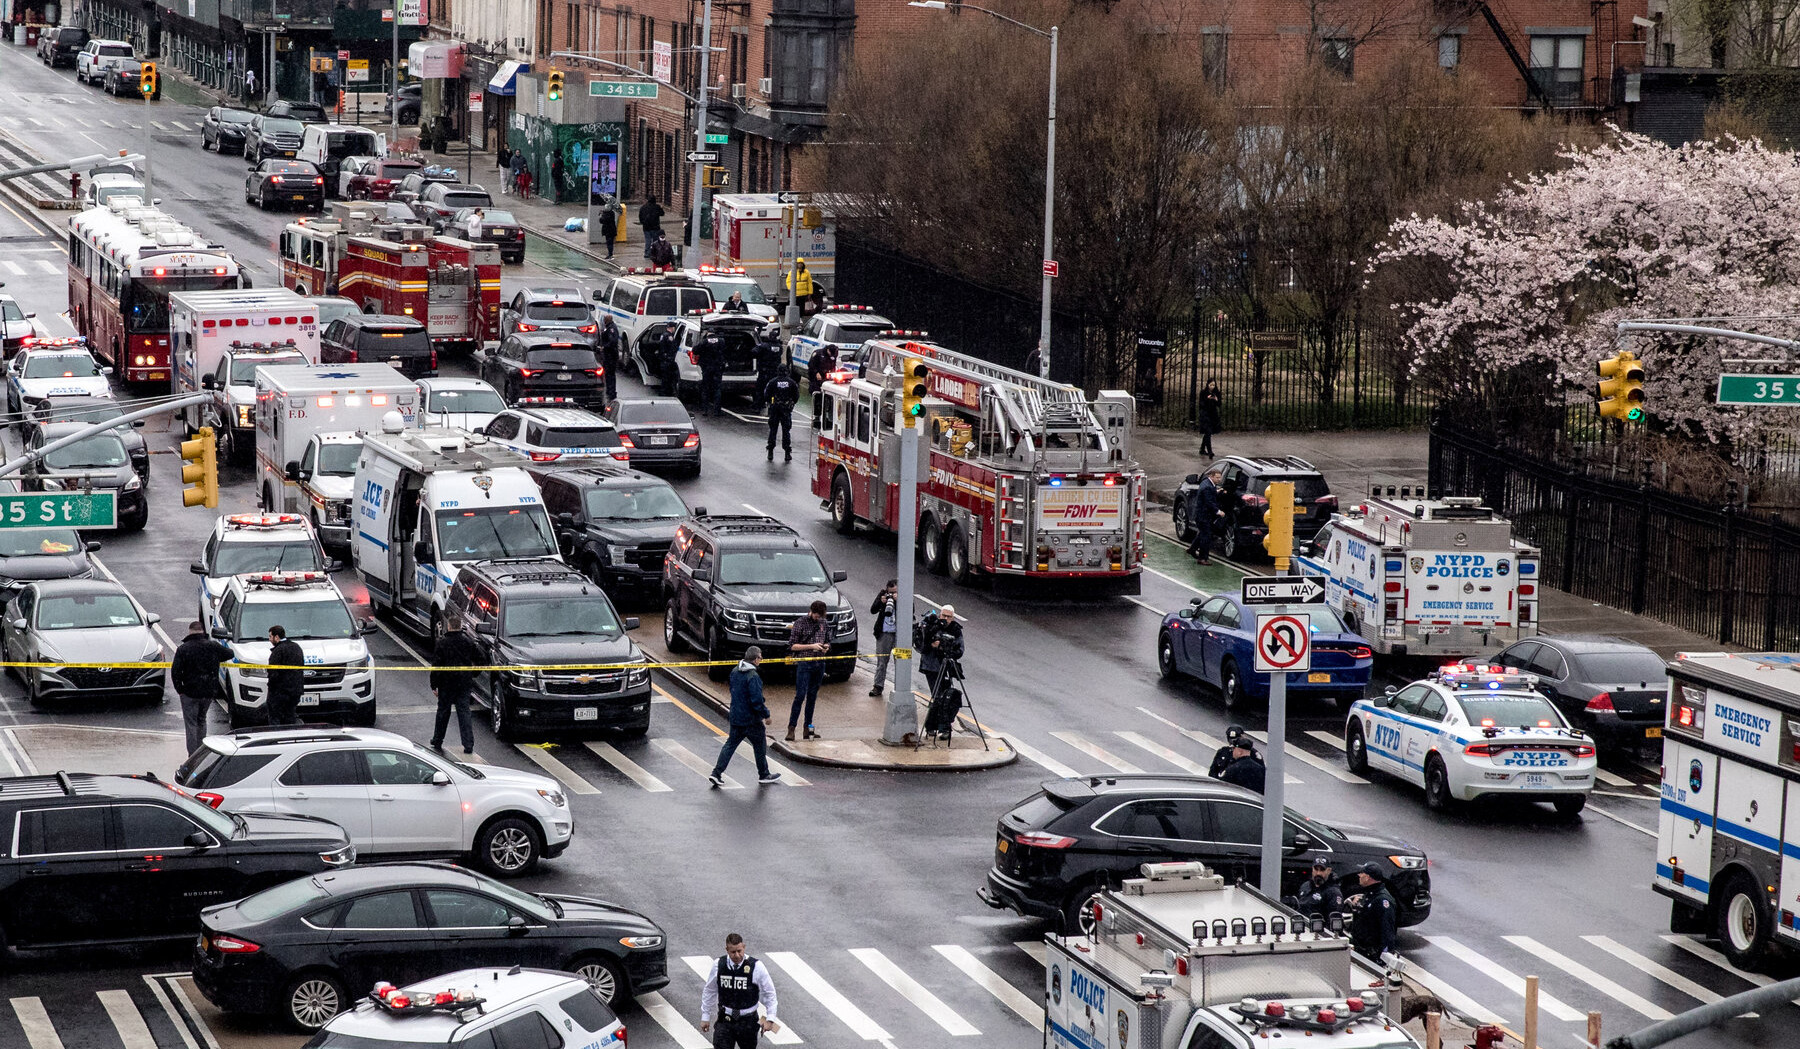 Նյու Յորքի մետրոյում անհայտ անձը կրակել է ուղևորների վրա